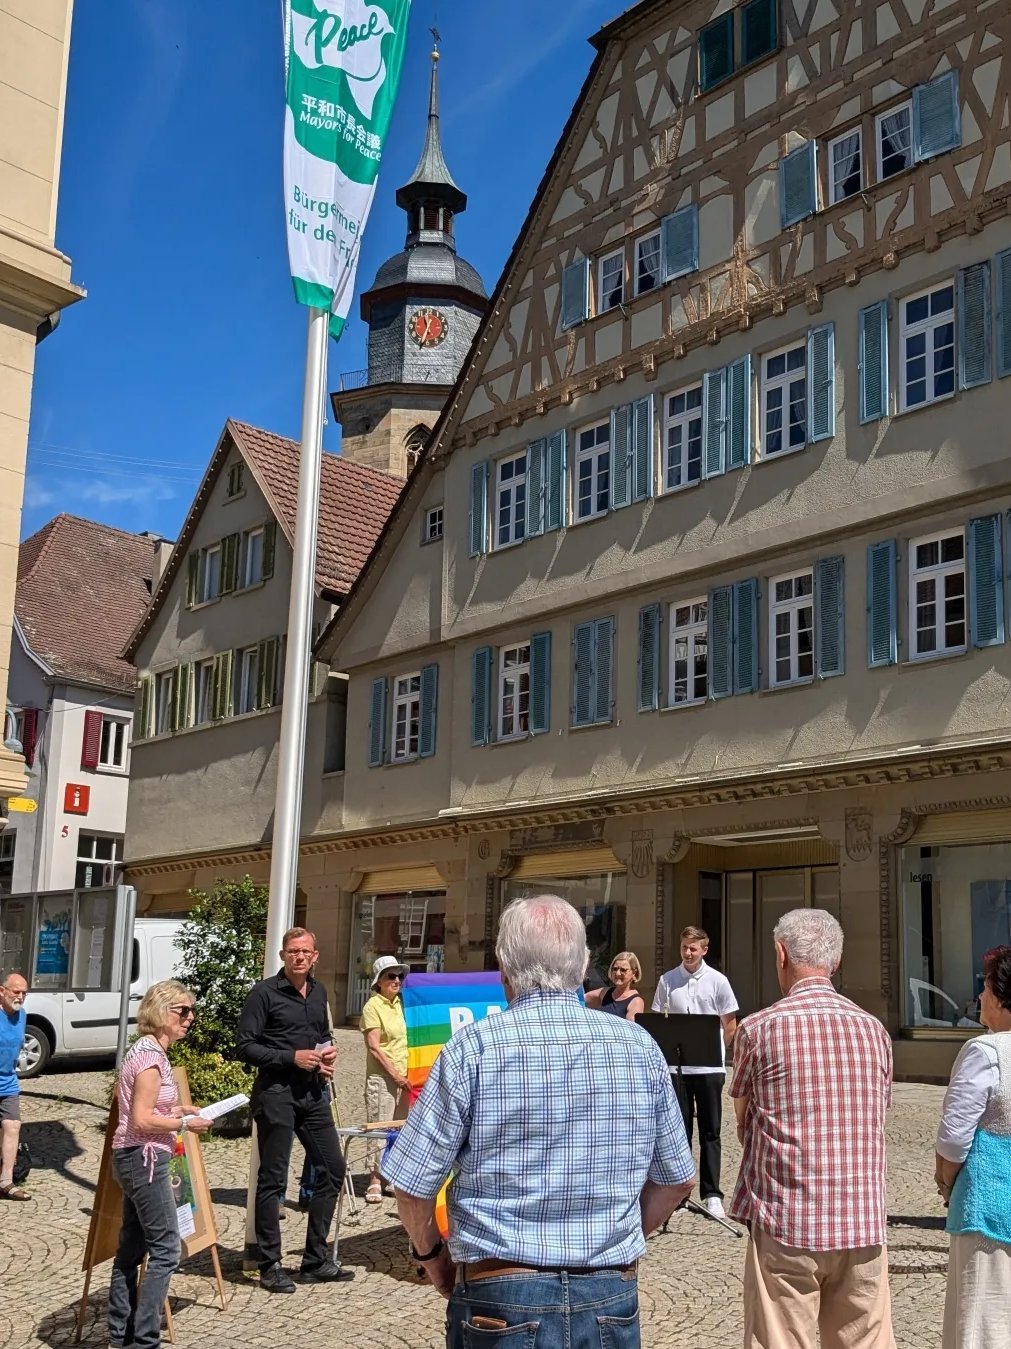 Oberbürgermeister Skrzypek und die Friedensgruppe Kleinglattbachhissen die Fahne am Rathaus.